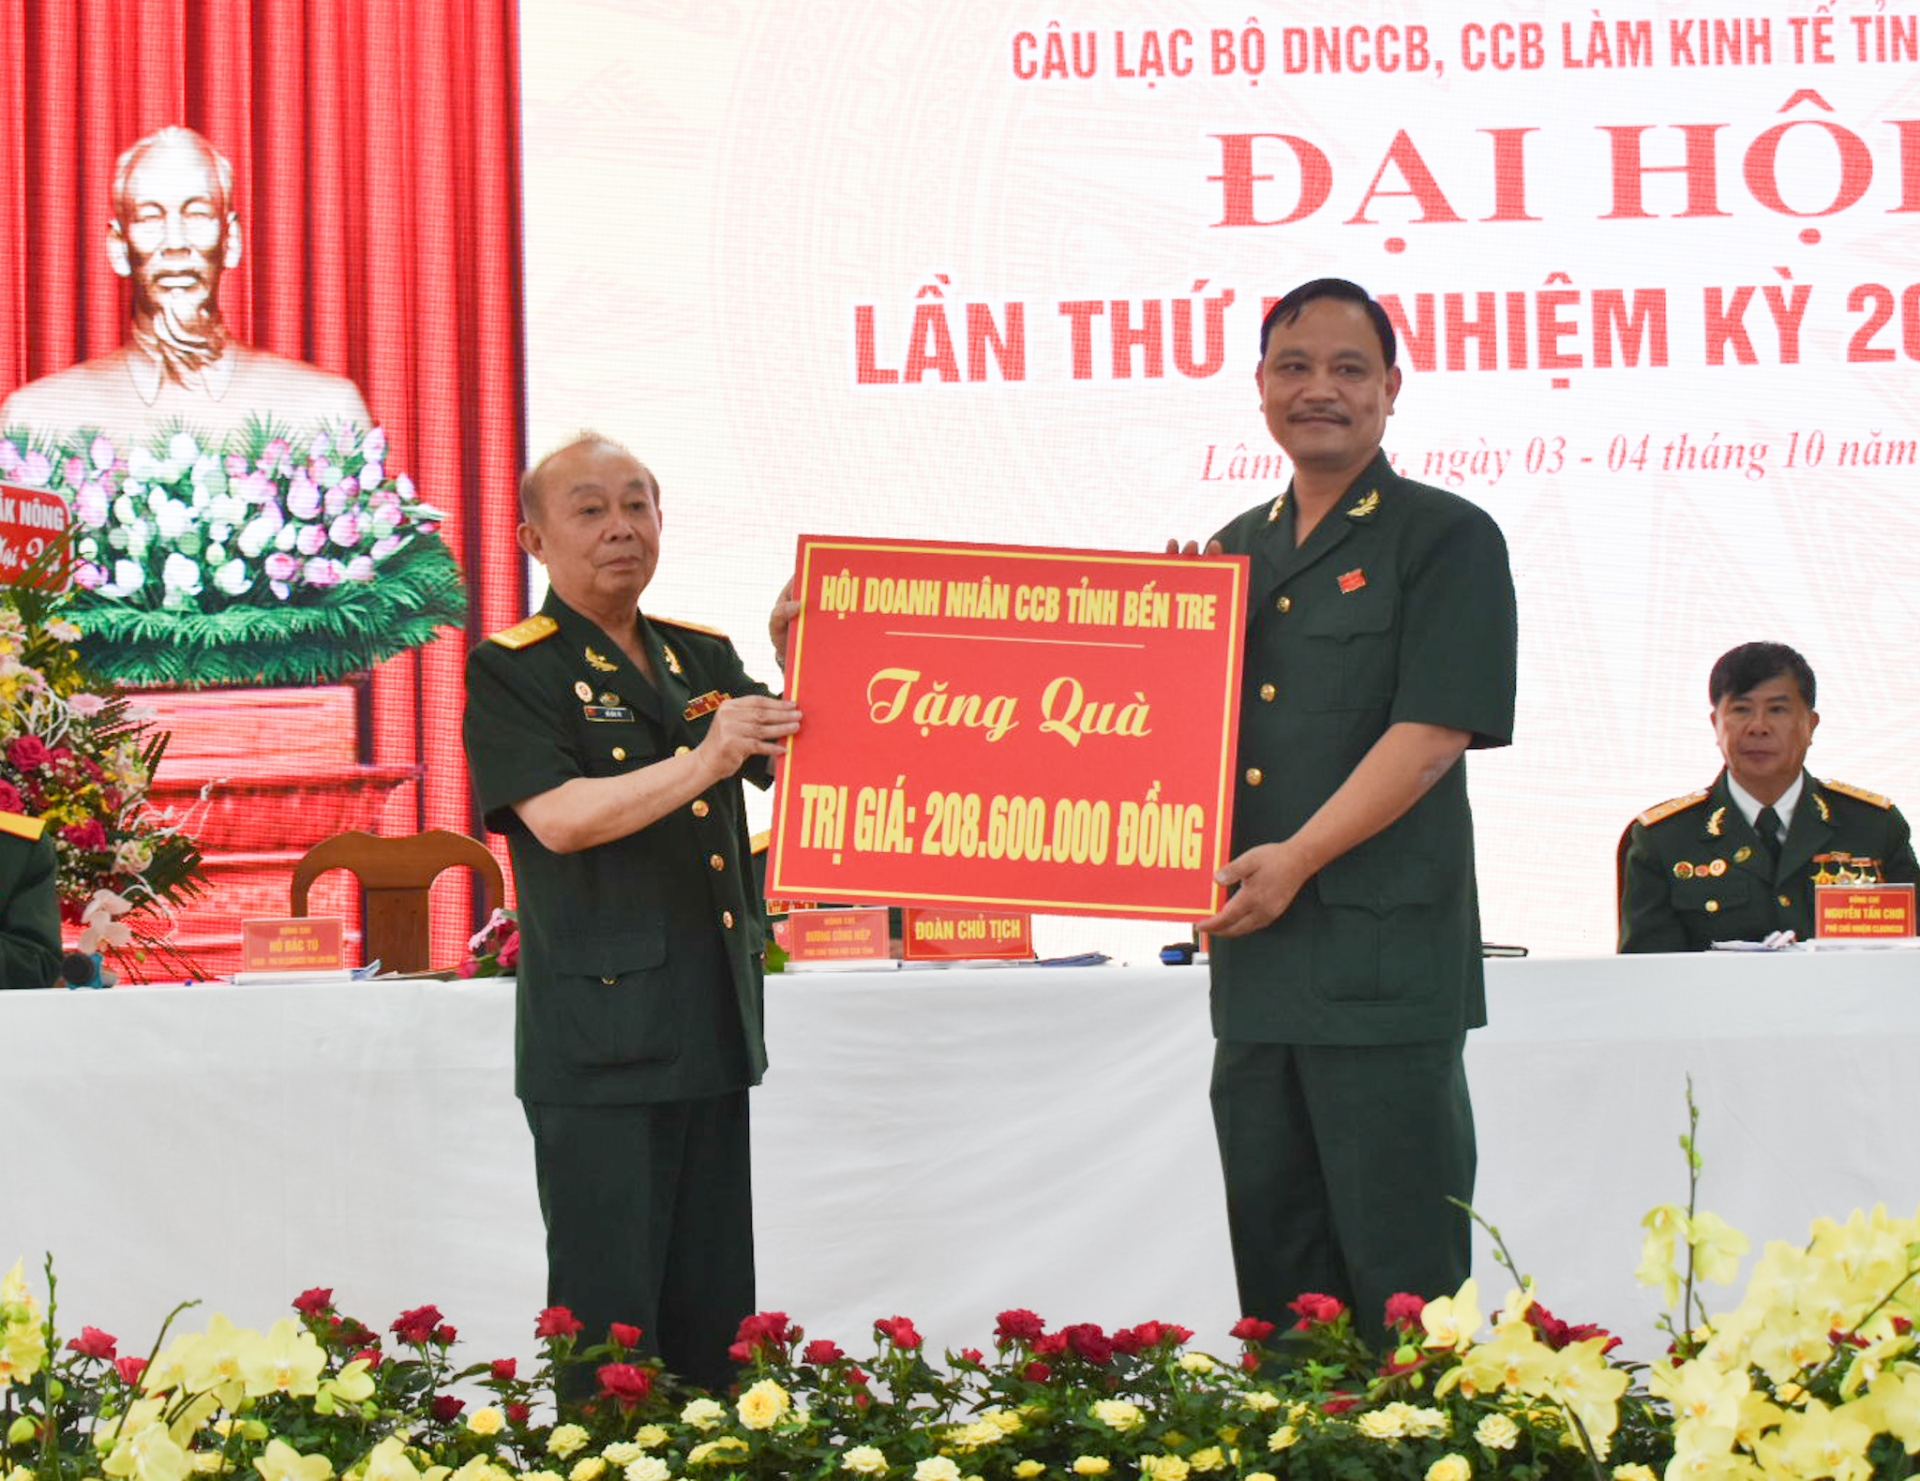 Hội Doanh nhân CCB tỉnh Bến Tre tặng hơn 200 triệu đồng cho CLB Doanh nhân CCB, CCB làm kinh tế tỉnh Lâm Đồng 